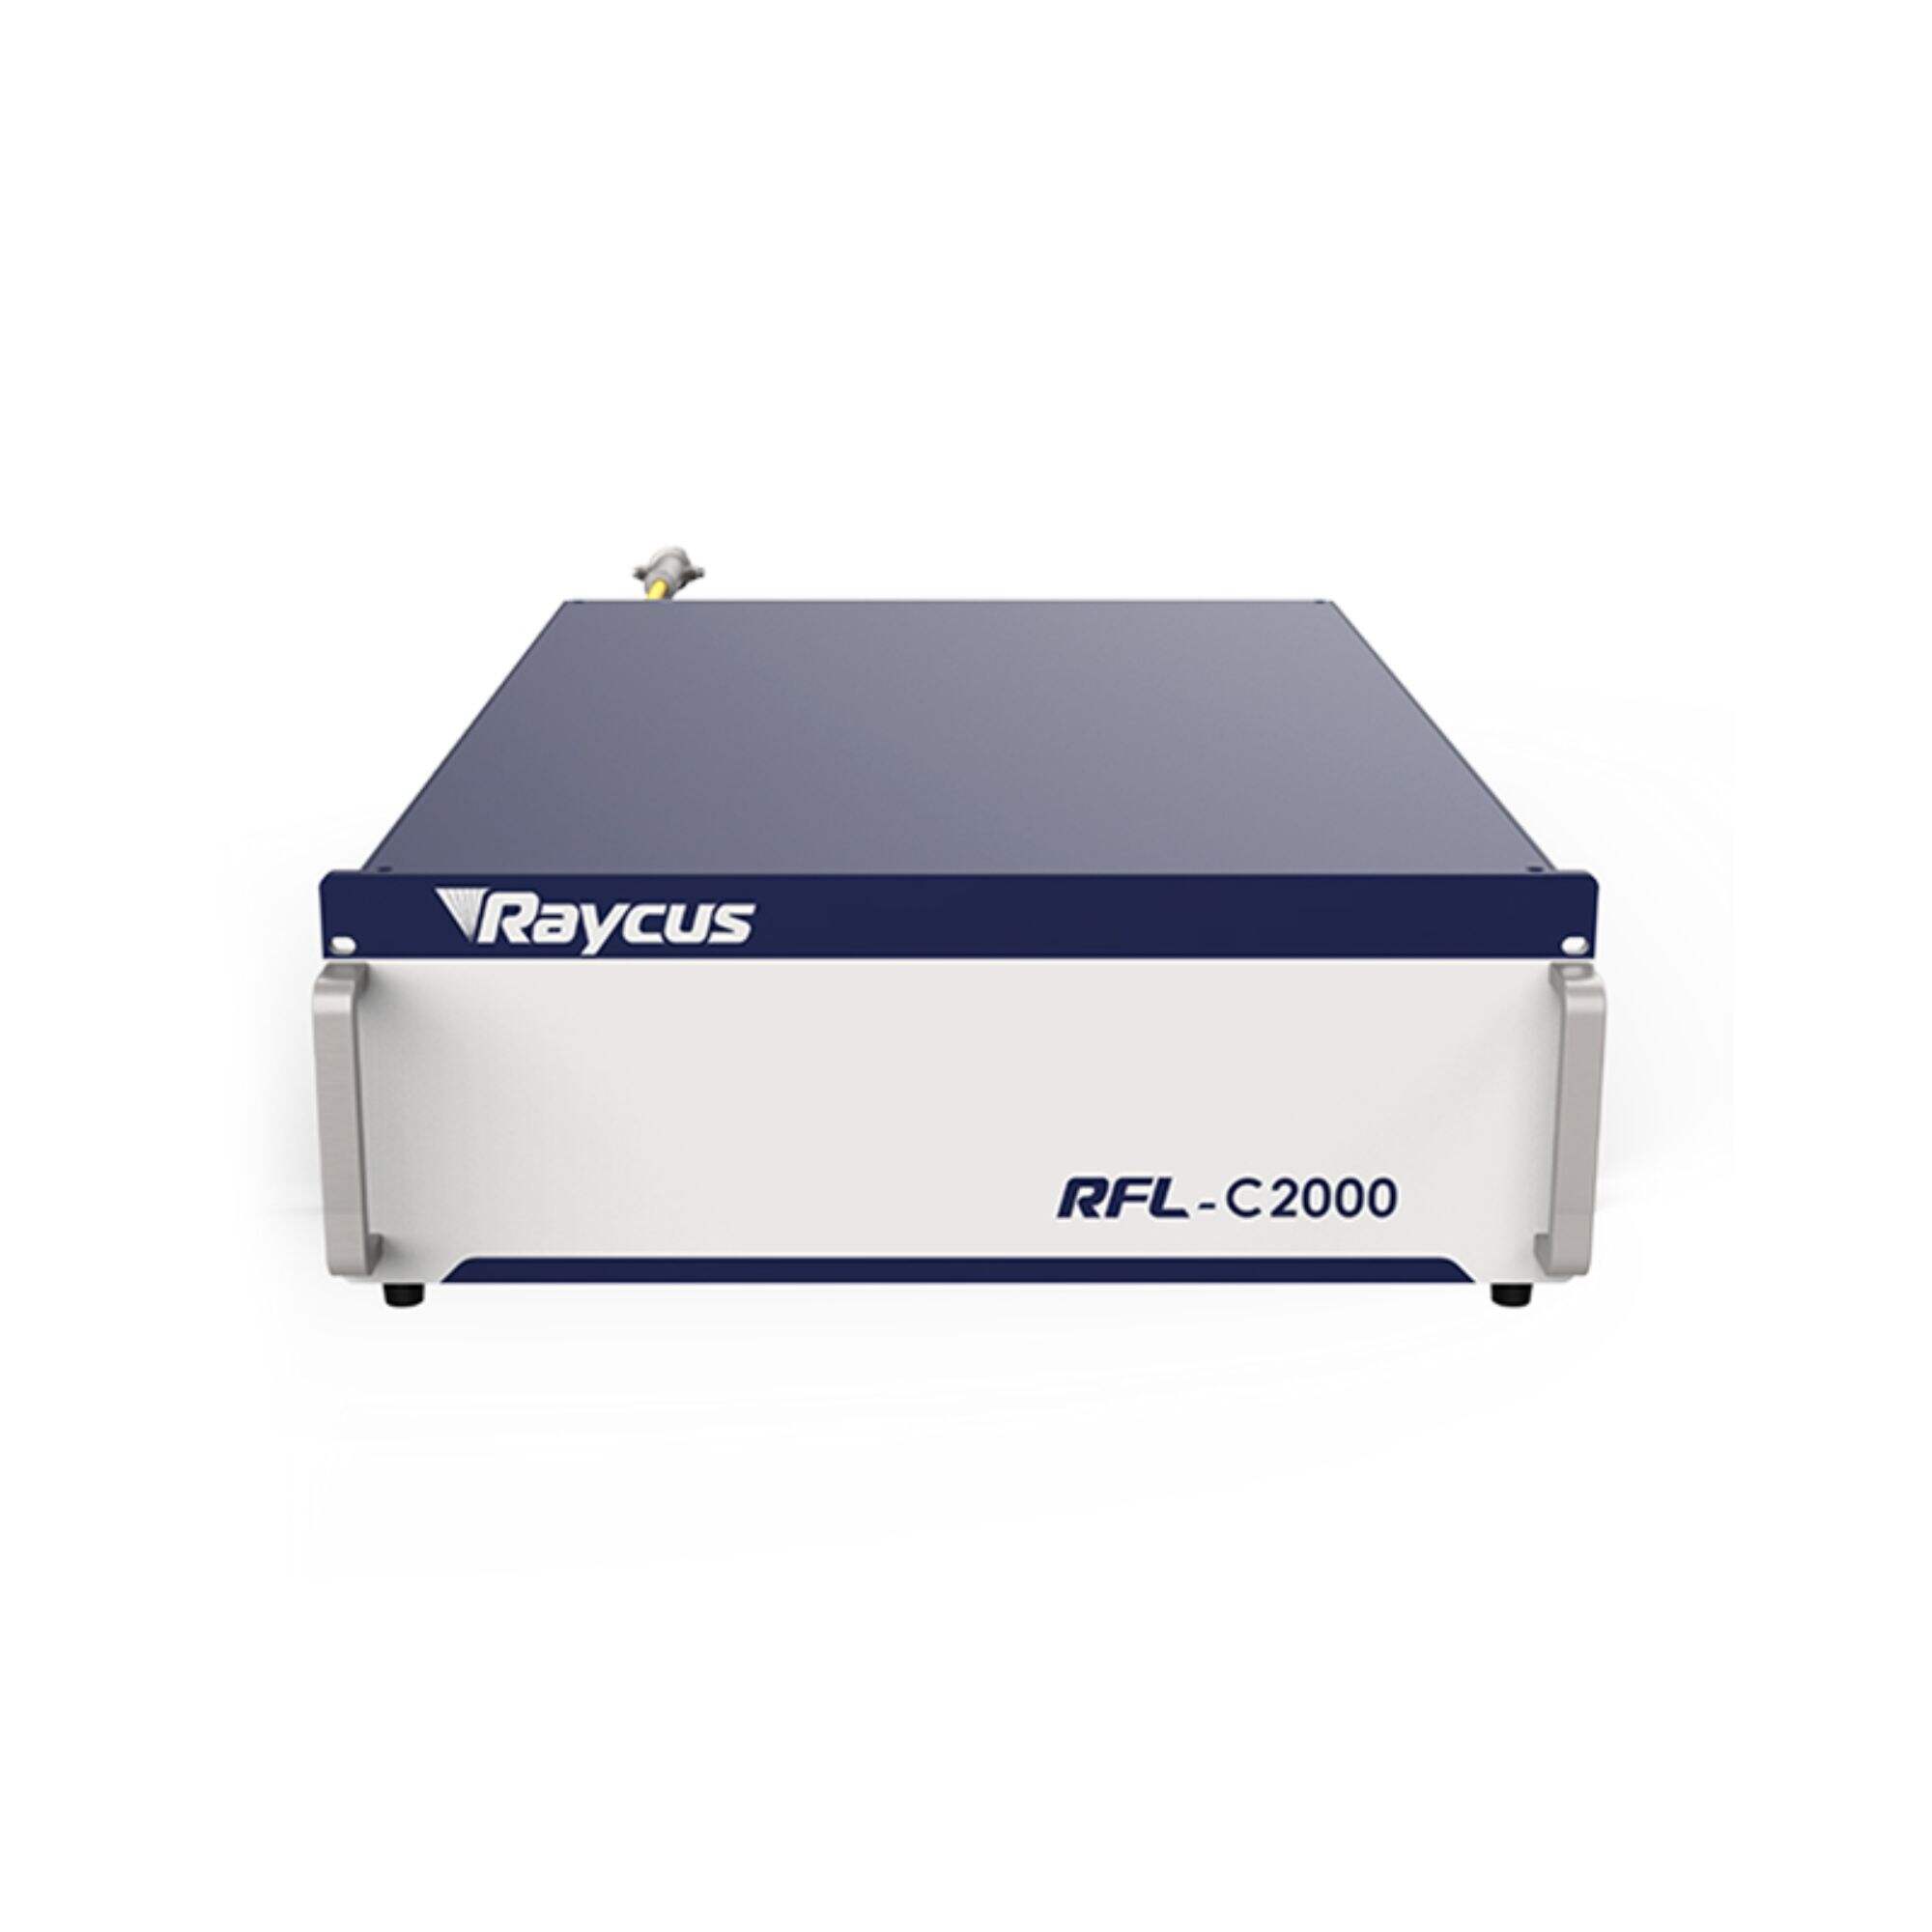 Raycus CW vláknový laserový zdroj pro svařování